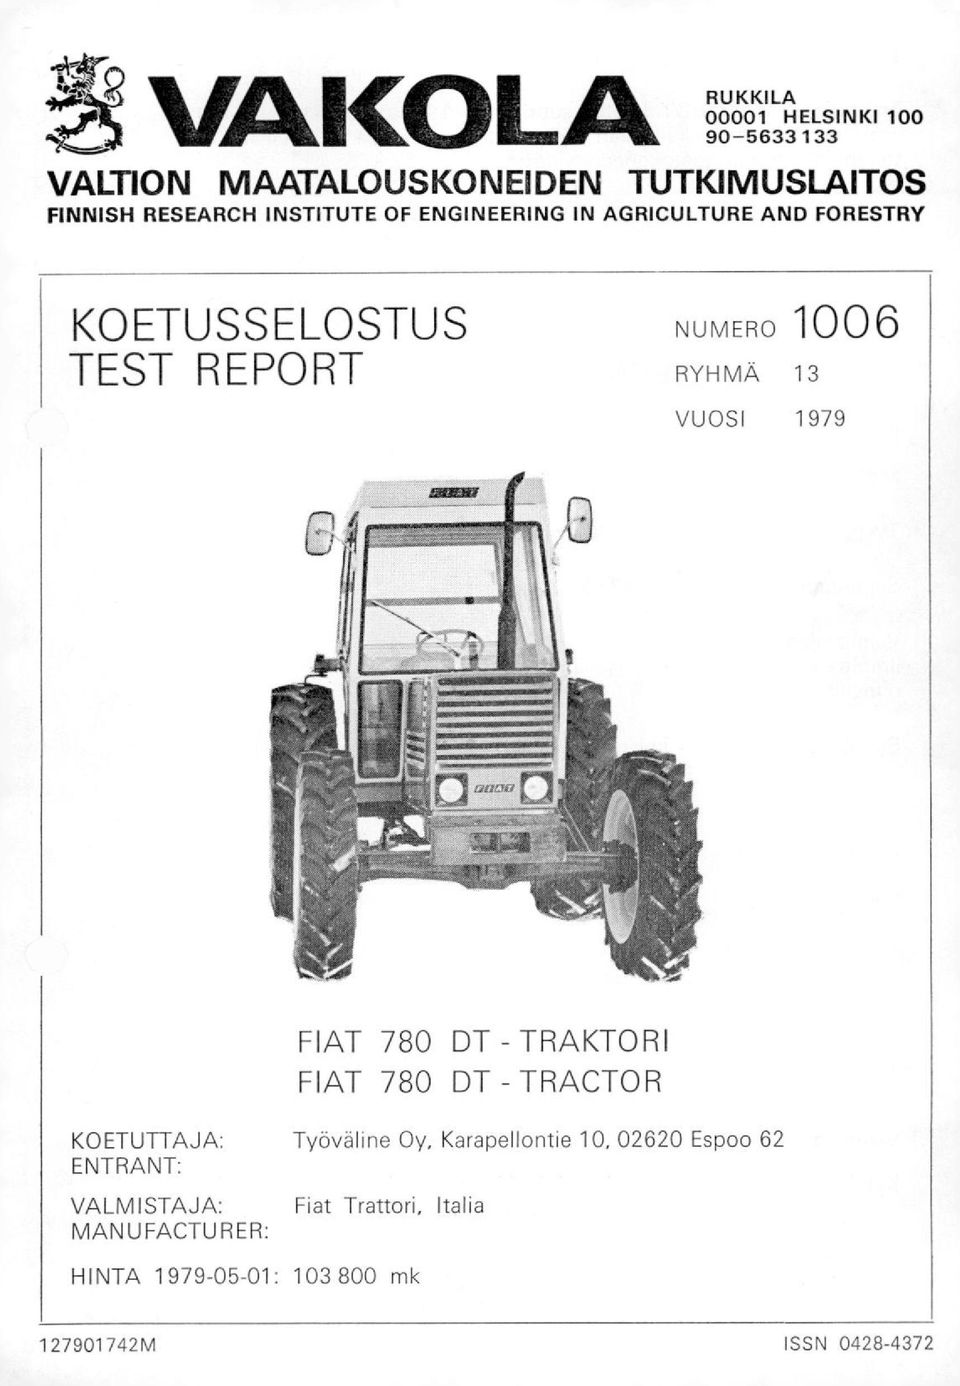 1979 FIAT 780 DT - TRAKTORI FIAT 780 DT - TRACTOR KOETUTTAJA: ENTRANT: VALMISTAJA: MANUFACTURER: Työväline